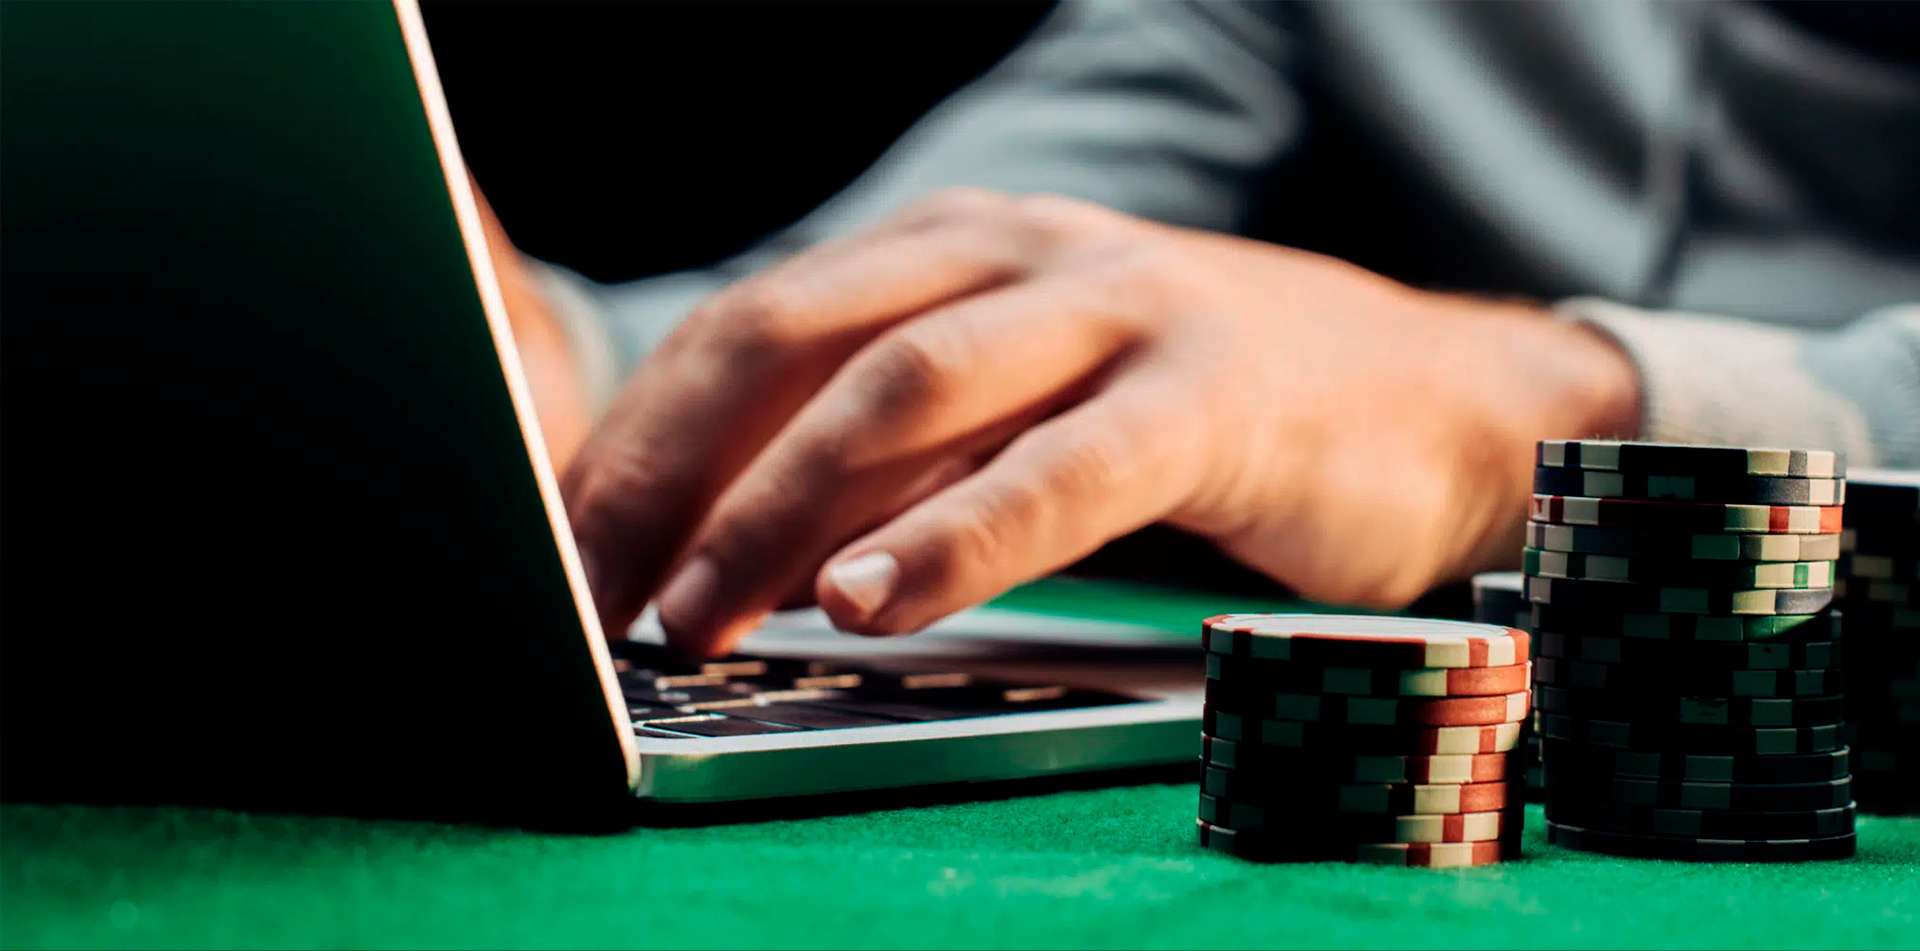 Top online casinos